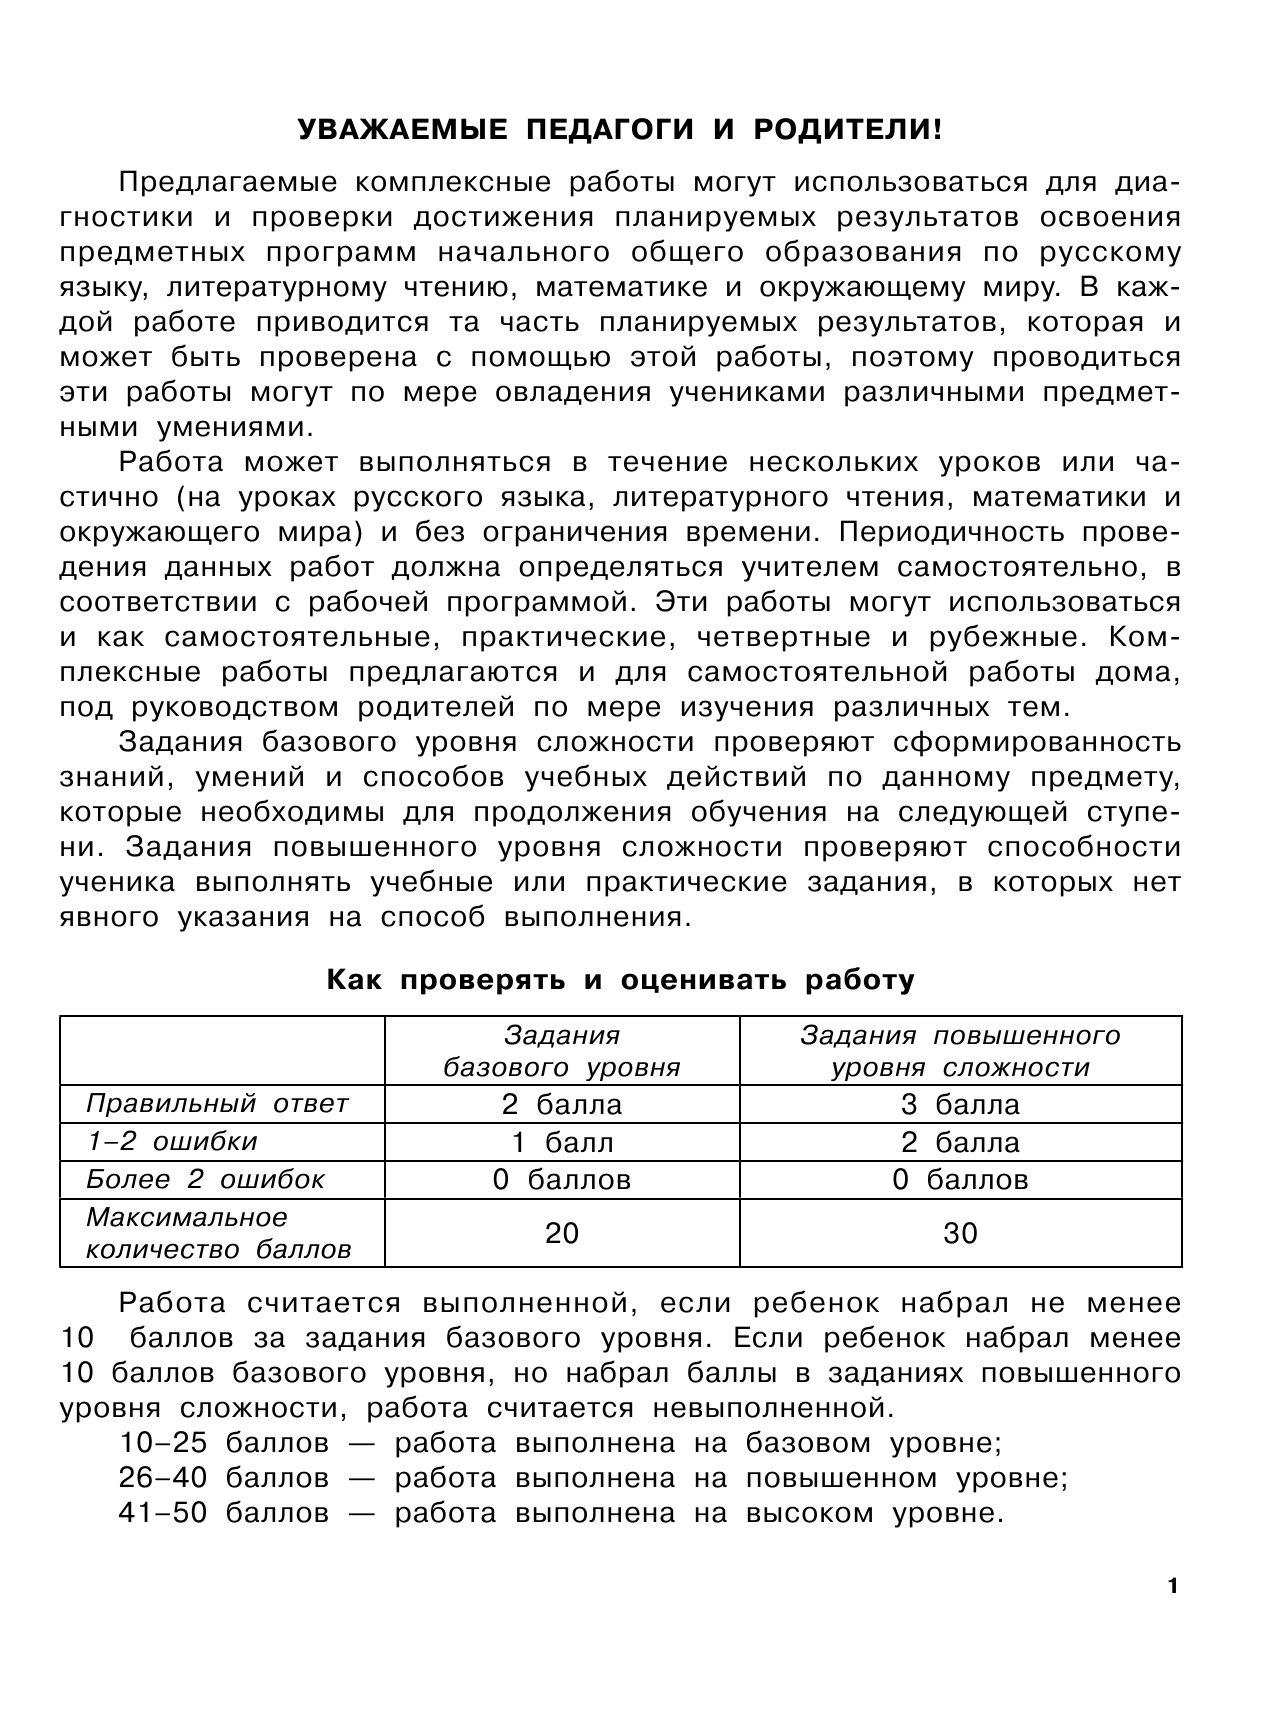 Танько Марина Александровна Диагностические комплексные работы в начальной школе. 1 классе - страница 1